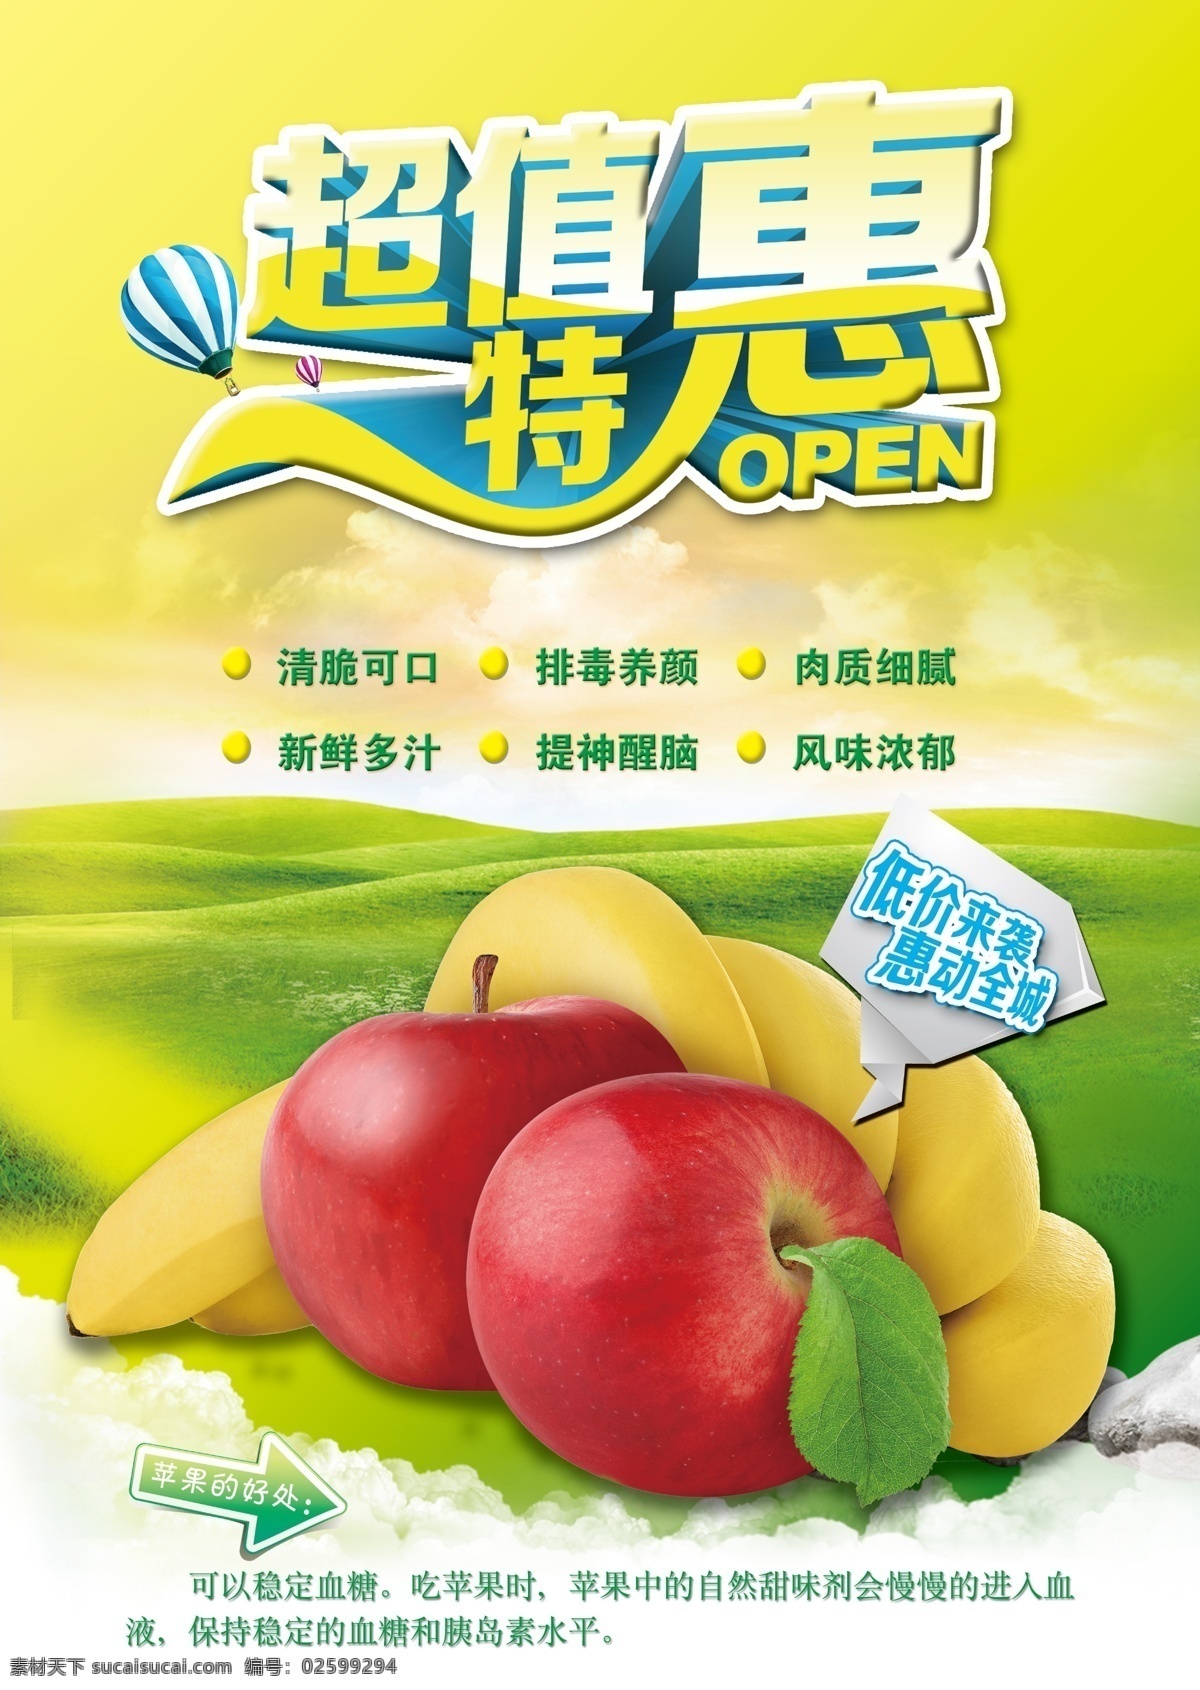 水果店海报 水果店 海报 水果宣传 水果海报 苹果海报 促销海报 超市促销 商场促销 促销模板 200